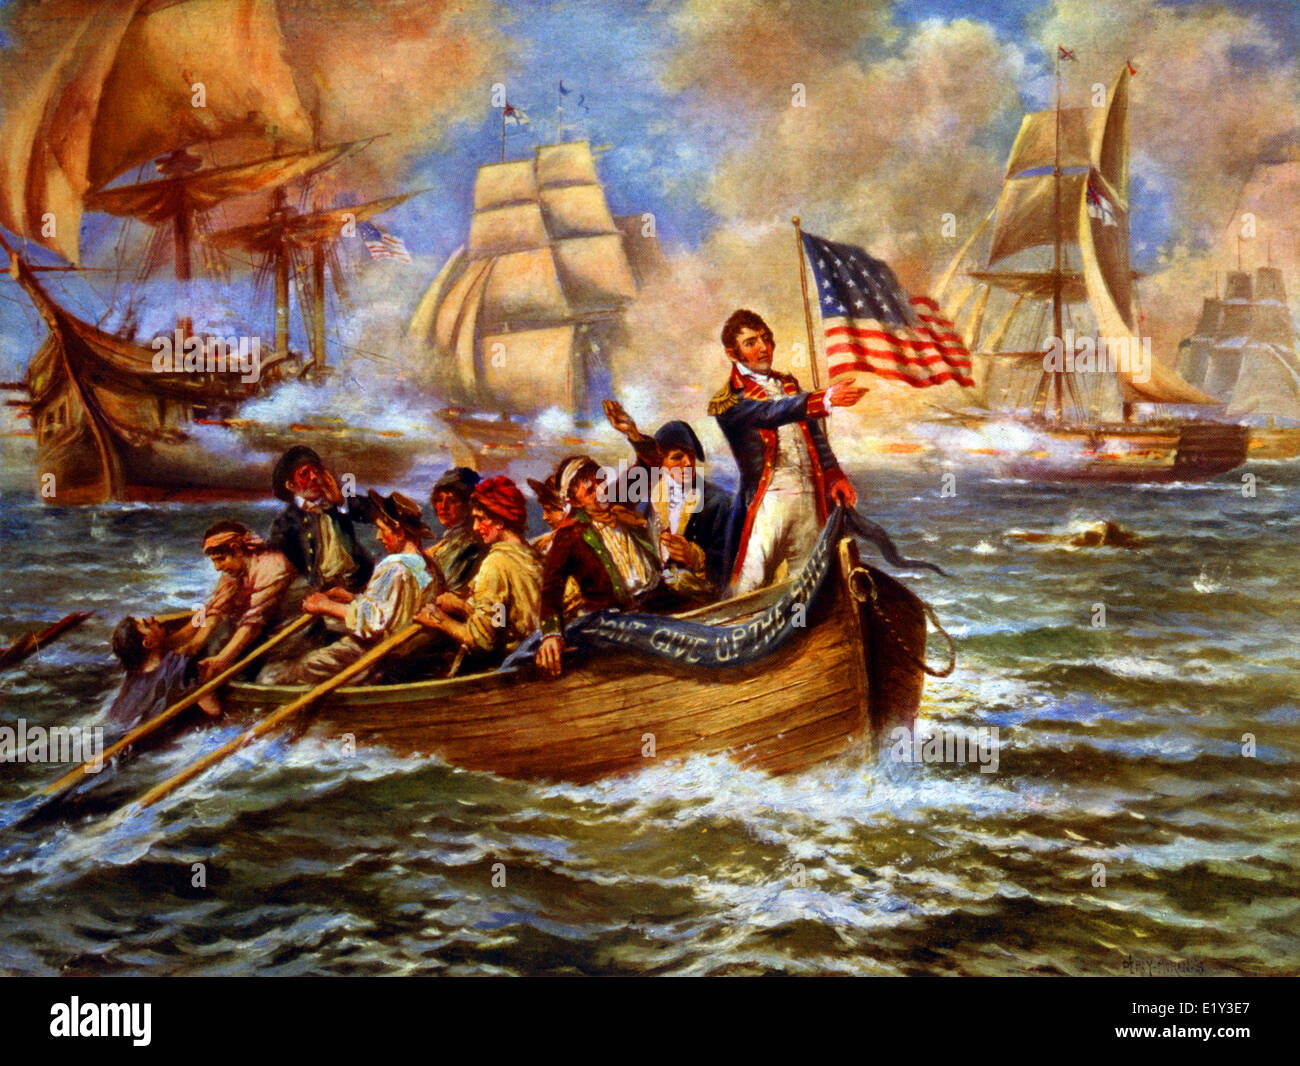 Estampado vintage que representa la batalla del lago Erie. Foto de stock